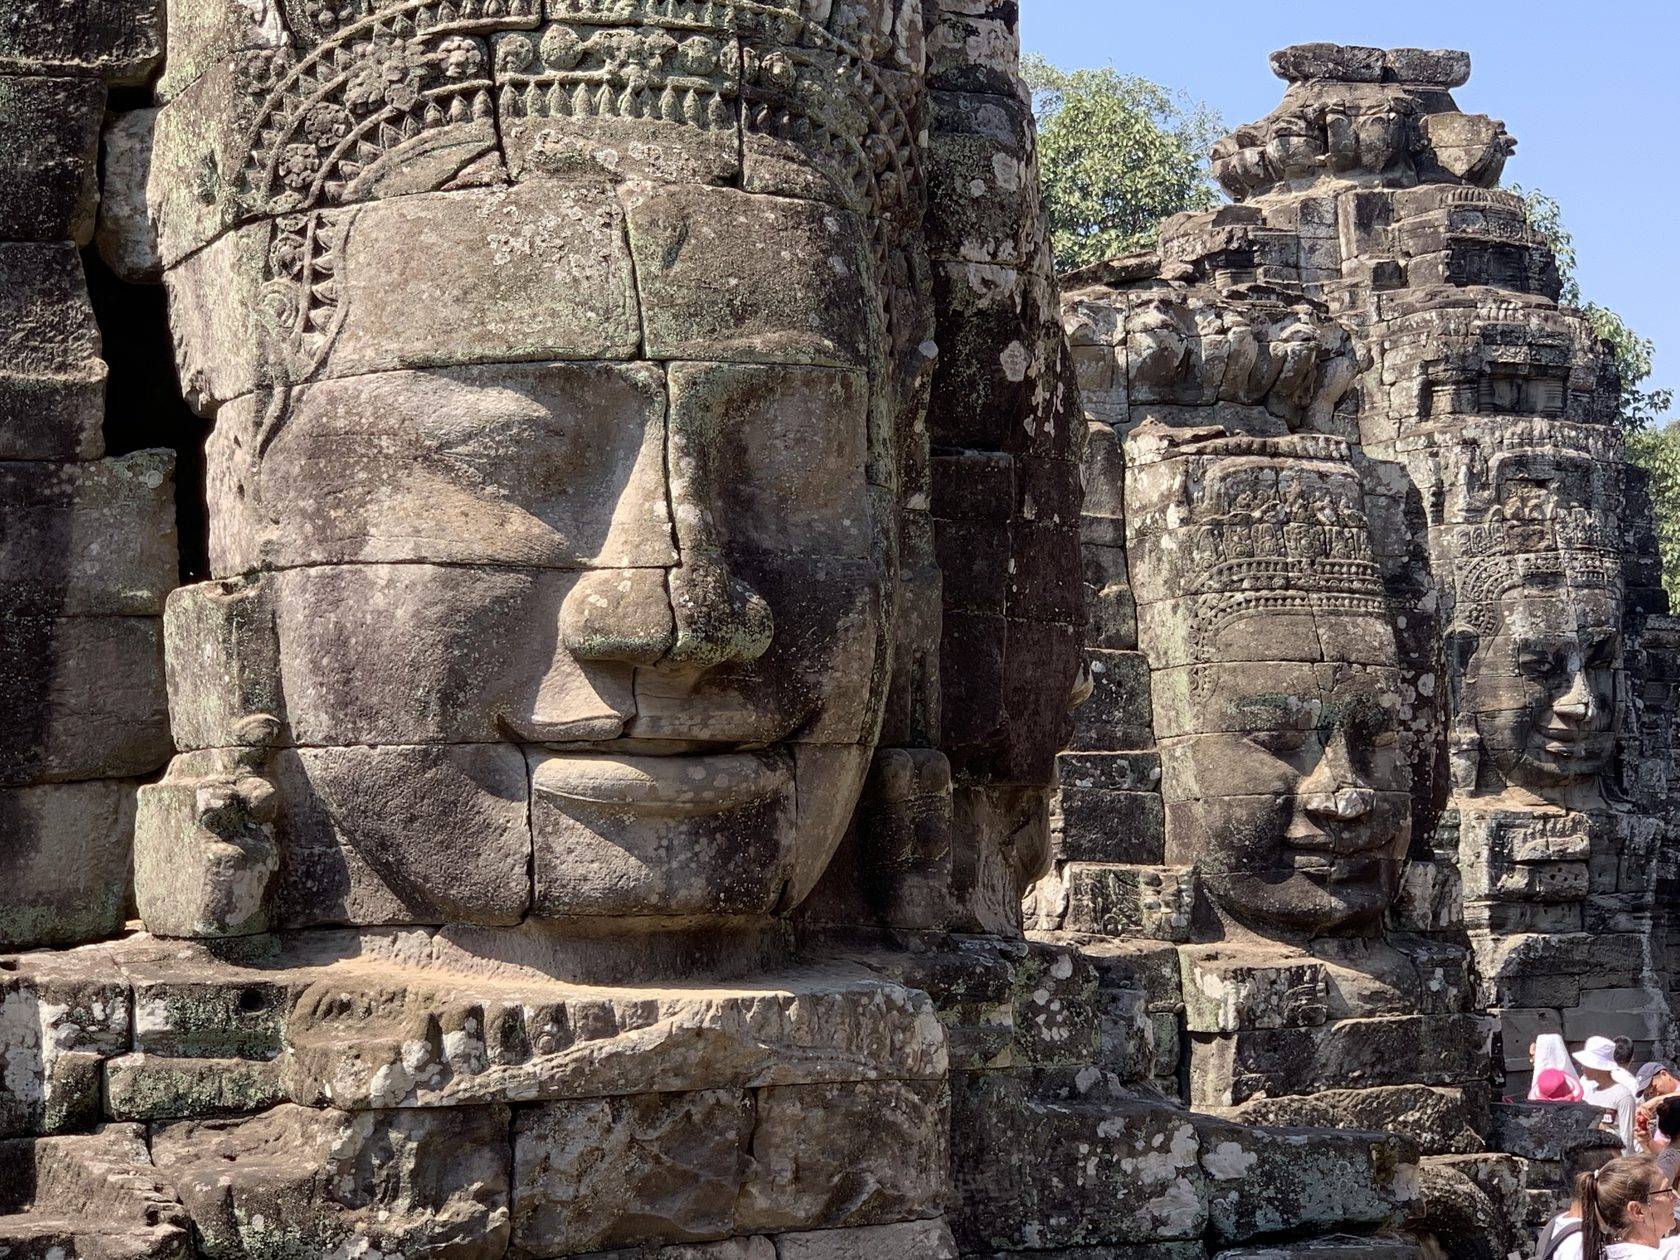 Ангкор-ват - самый большой храм в мире (камбоджа)